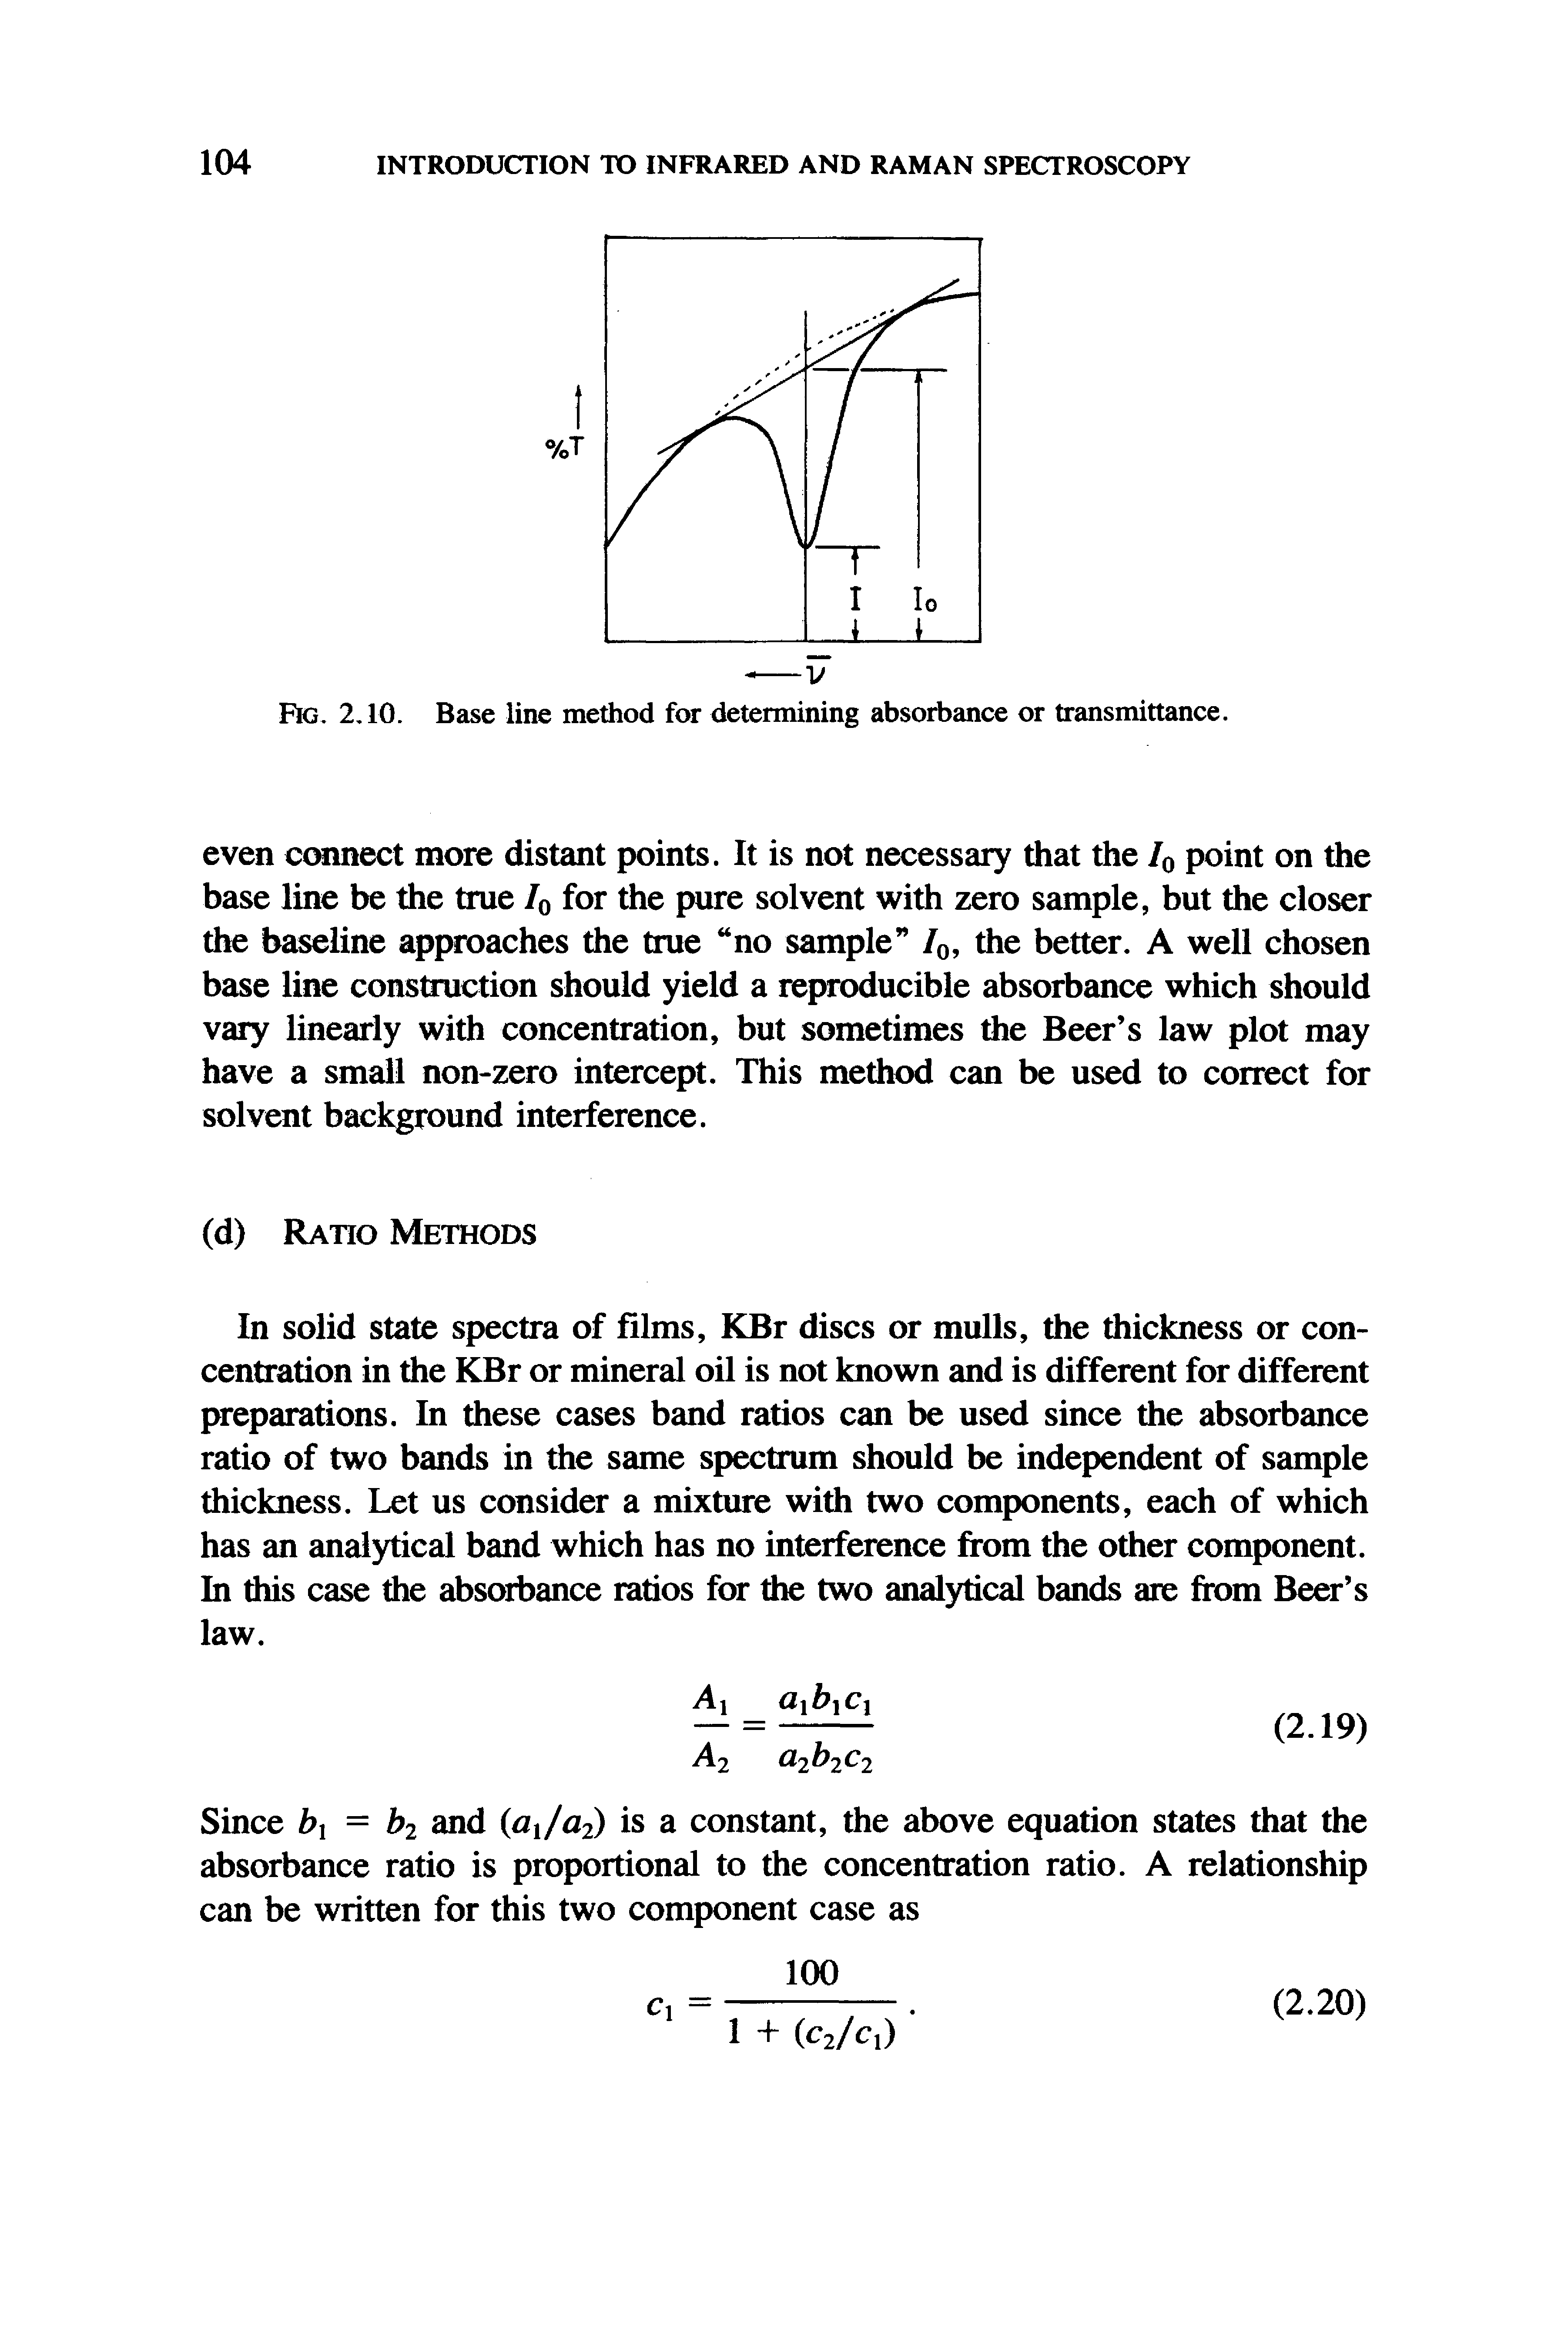 Fig. 2,10. Base line method for determining absorbance or transmittance.